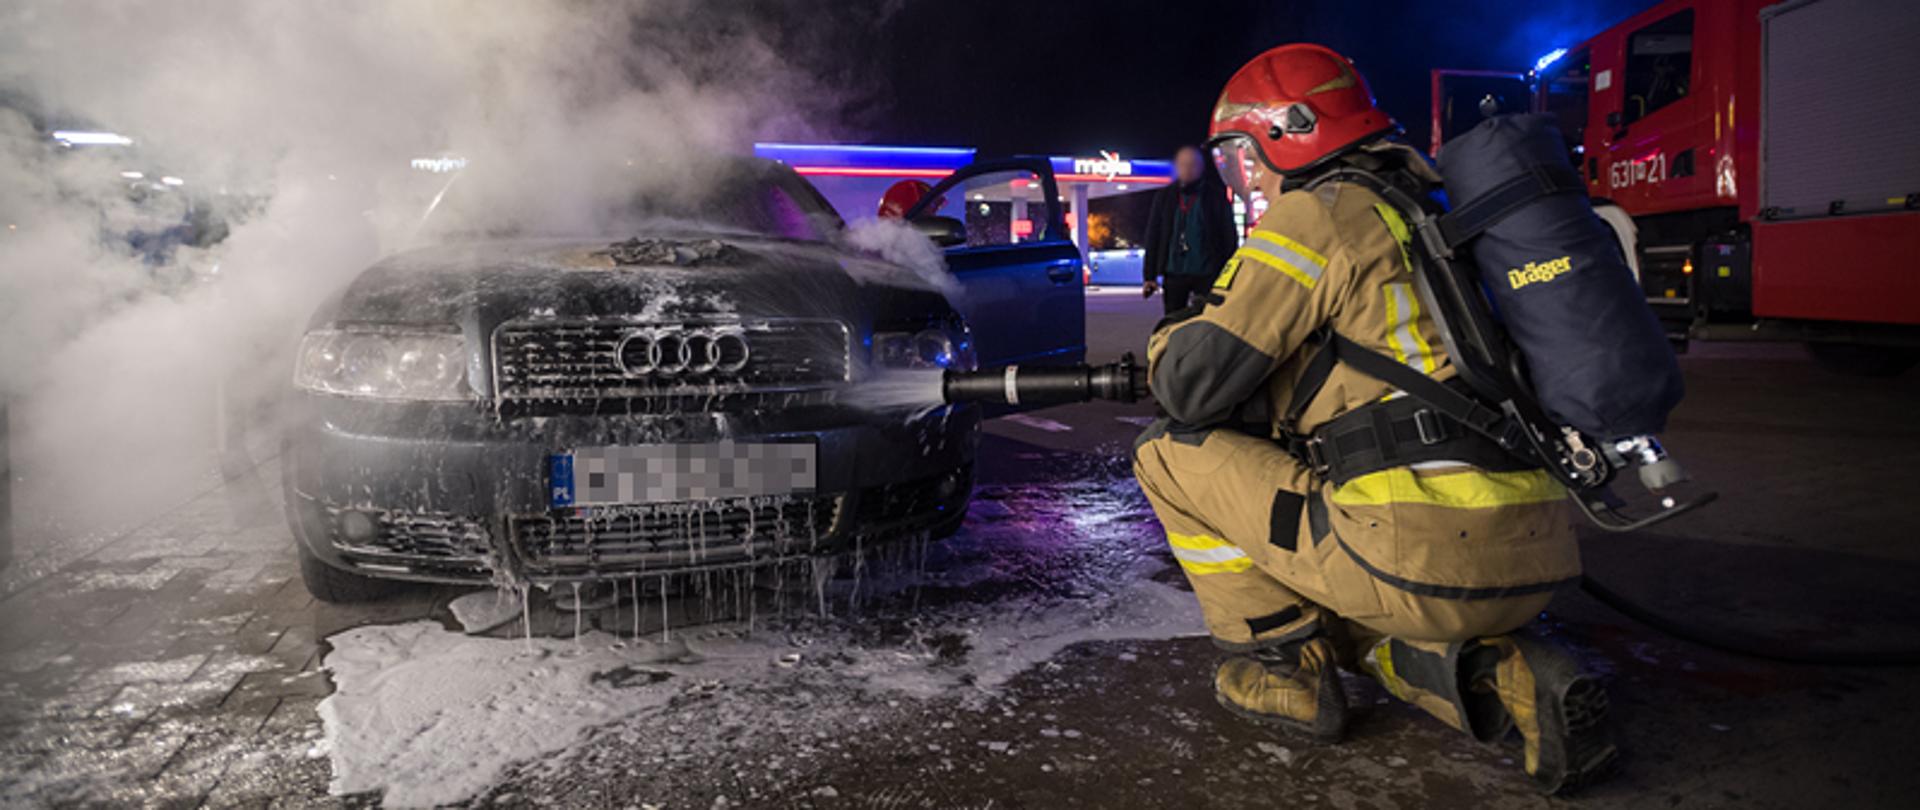 Samochód osobowy marki Audi, spod maski wydobywa się dym. Strażak w aparacie powietrznym kuca przed pojazdem i podaje prąd wody pod maskę.